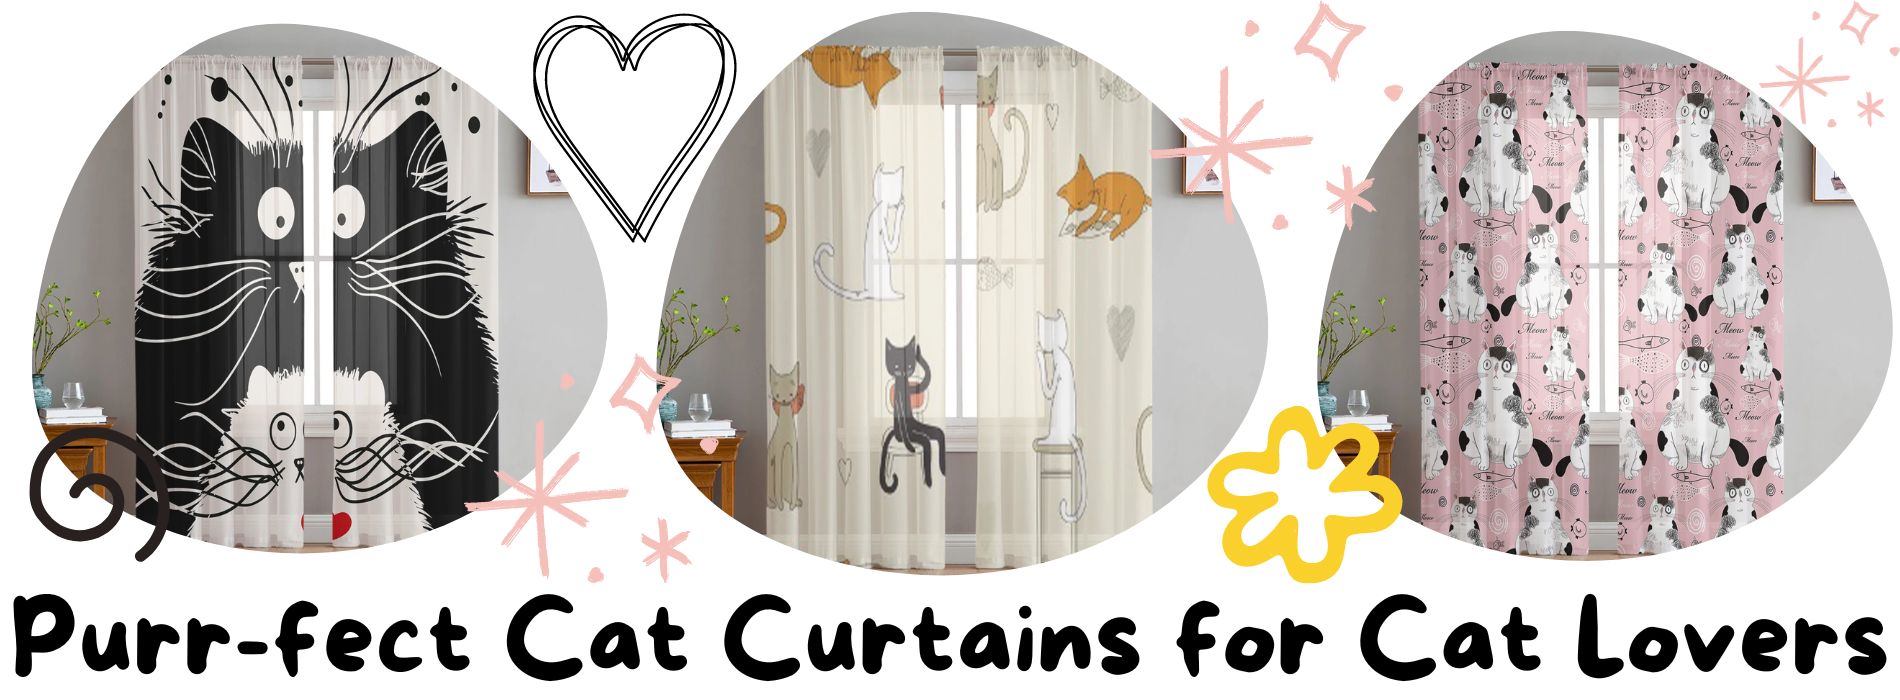 cat-curtains